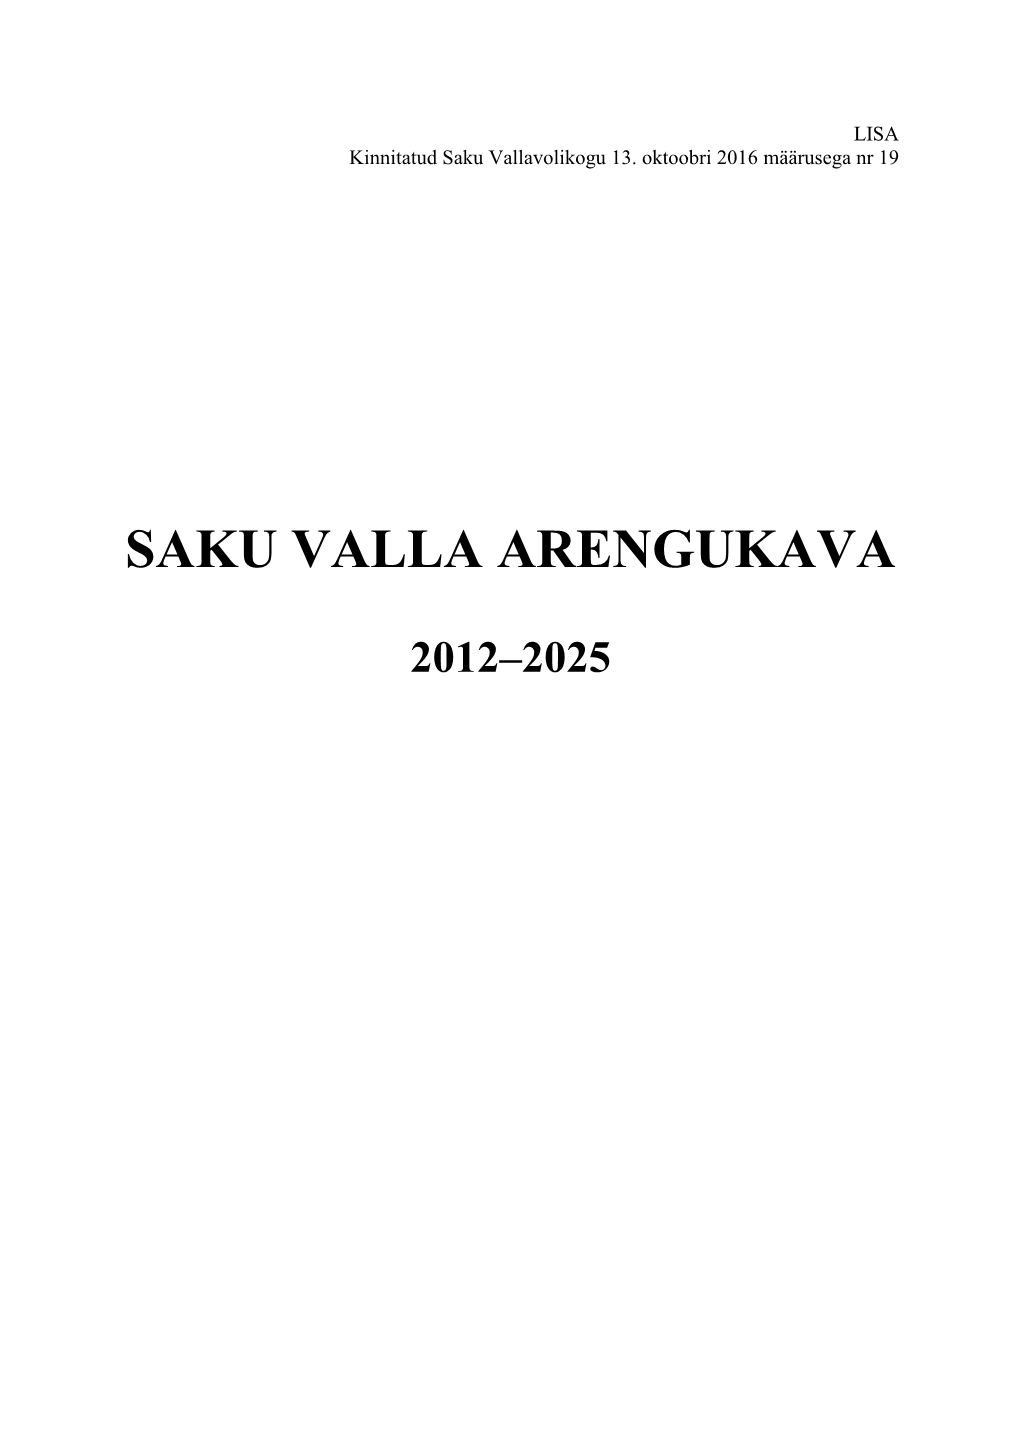 Saku Valla Arengukava 2011-2025